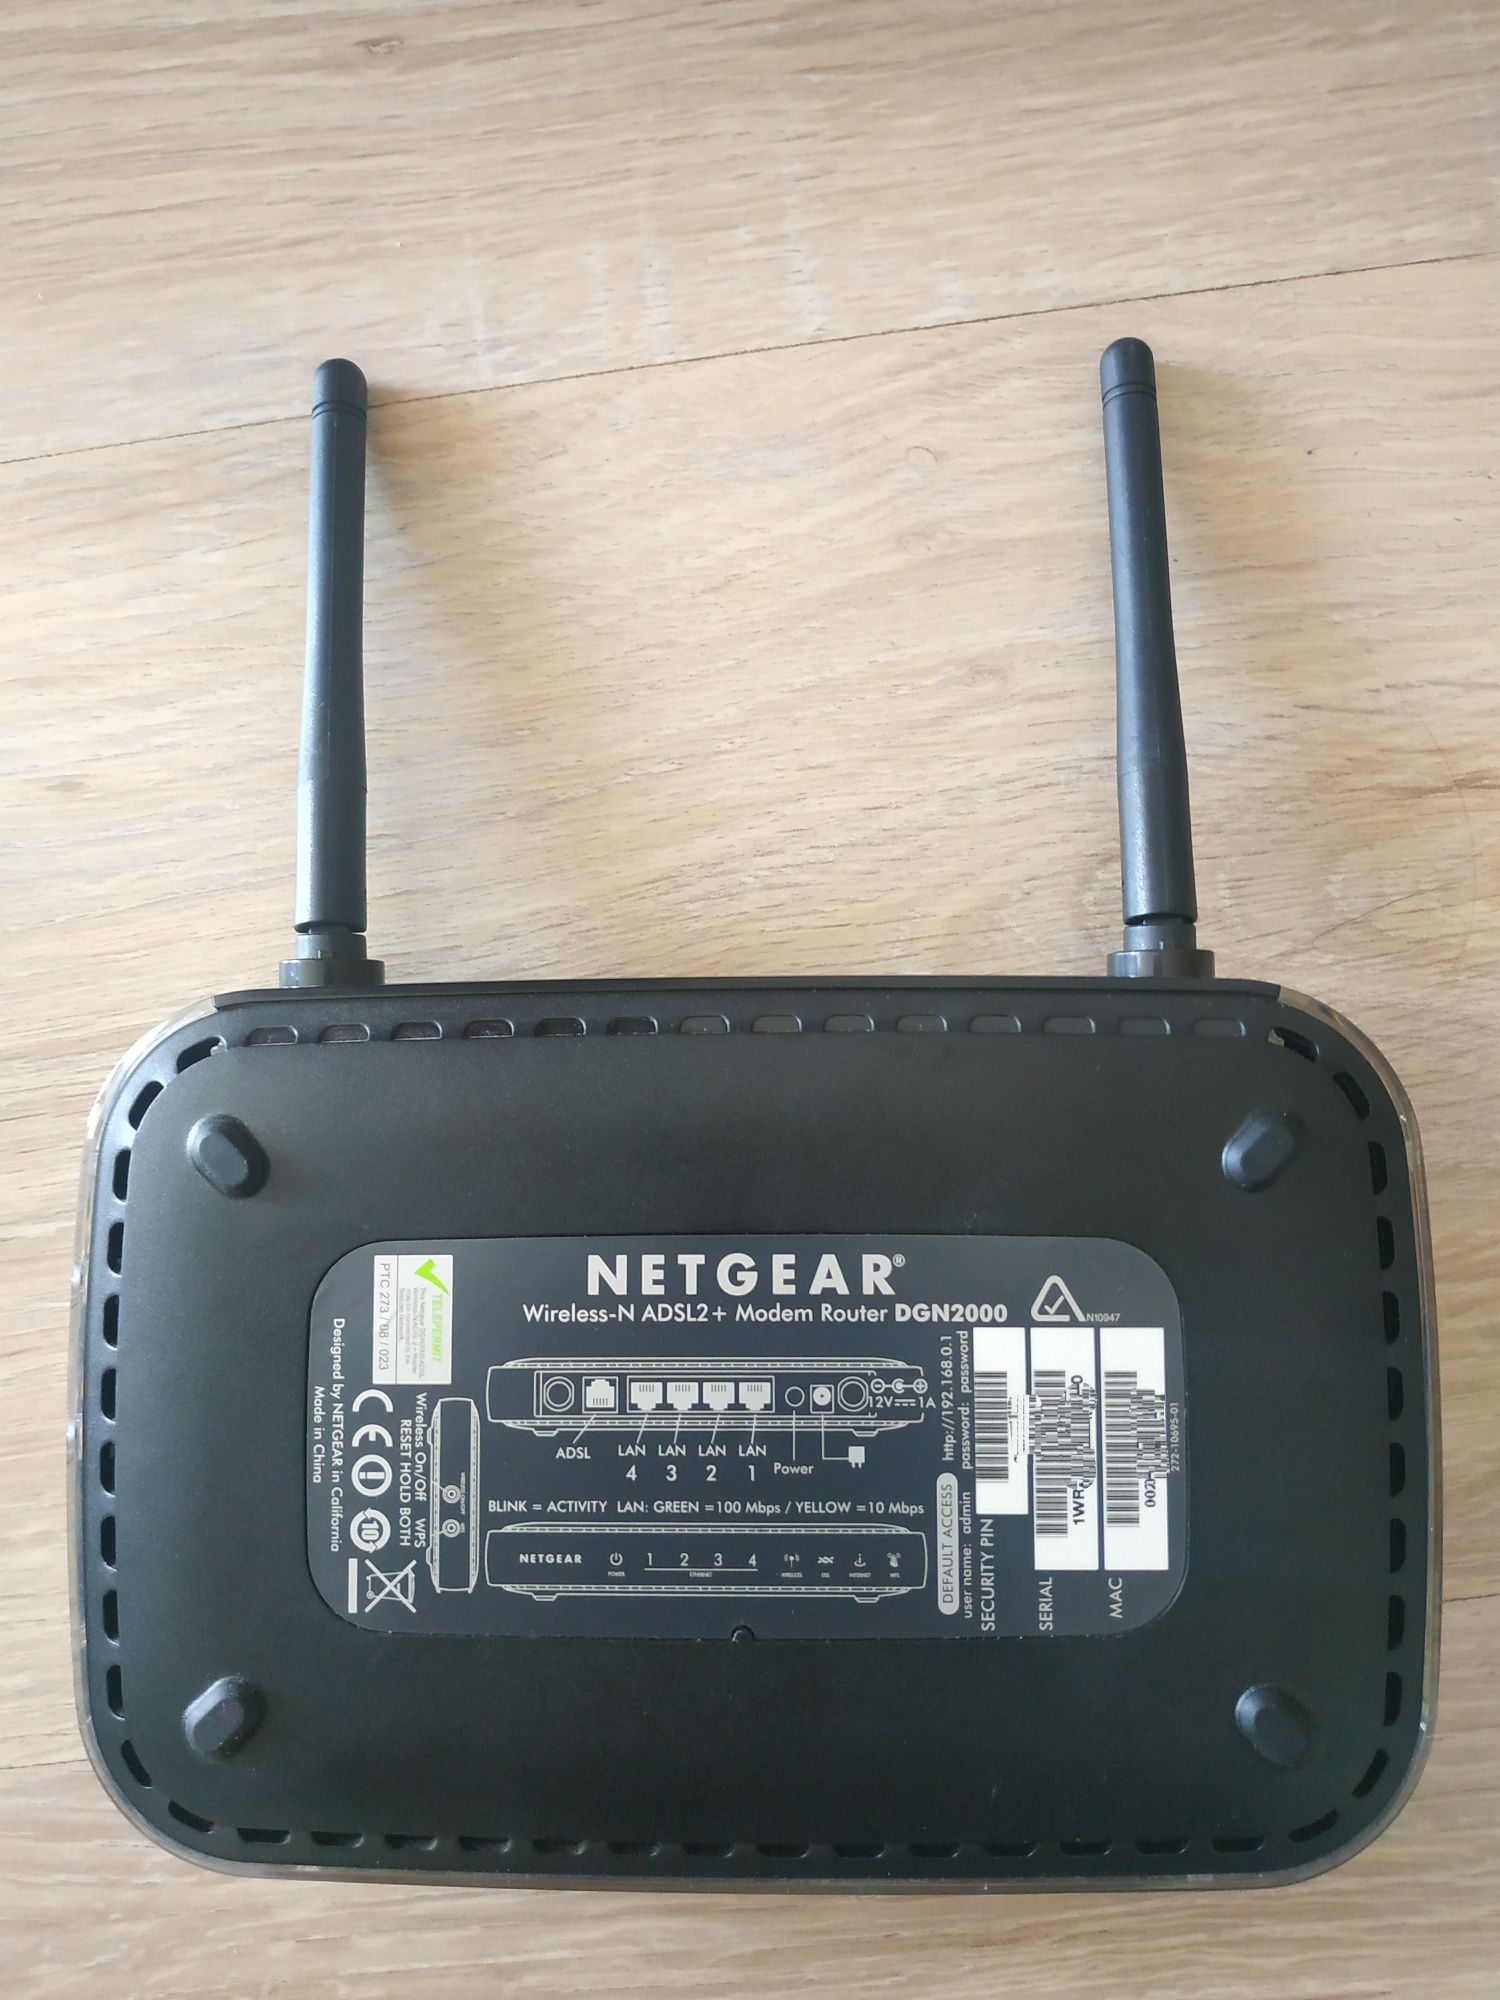 Netgear router DGN2000